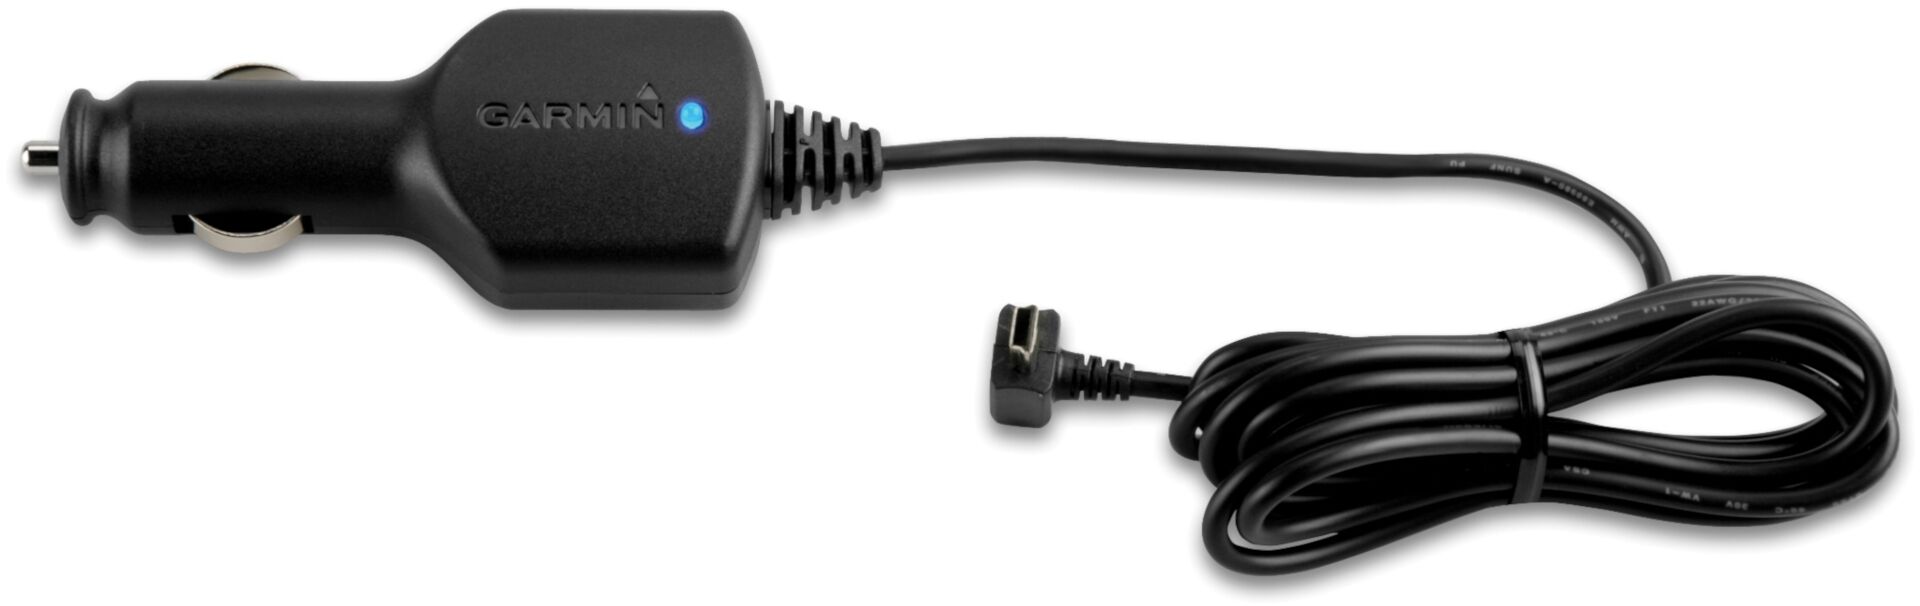 Garmin zumo/Virb Câble d’alimentation voiture Noir taille : unique taille